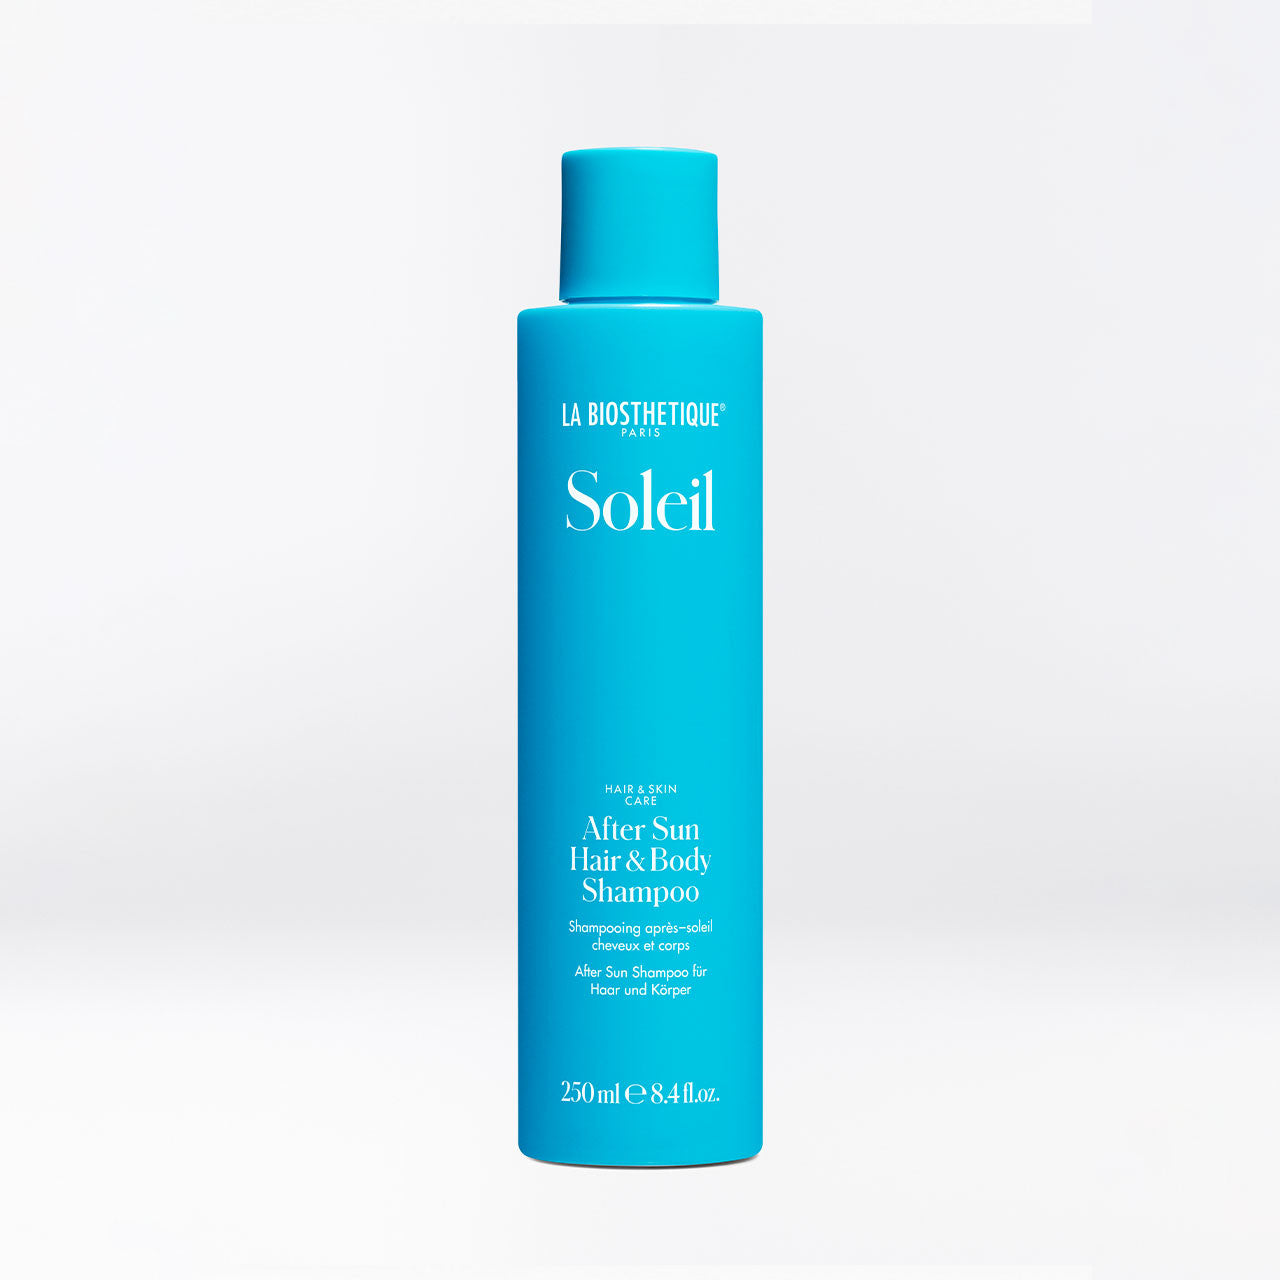 La Bio Soleil After-Sun Hair & Body Shampoo